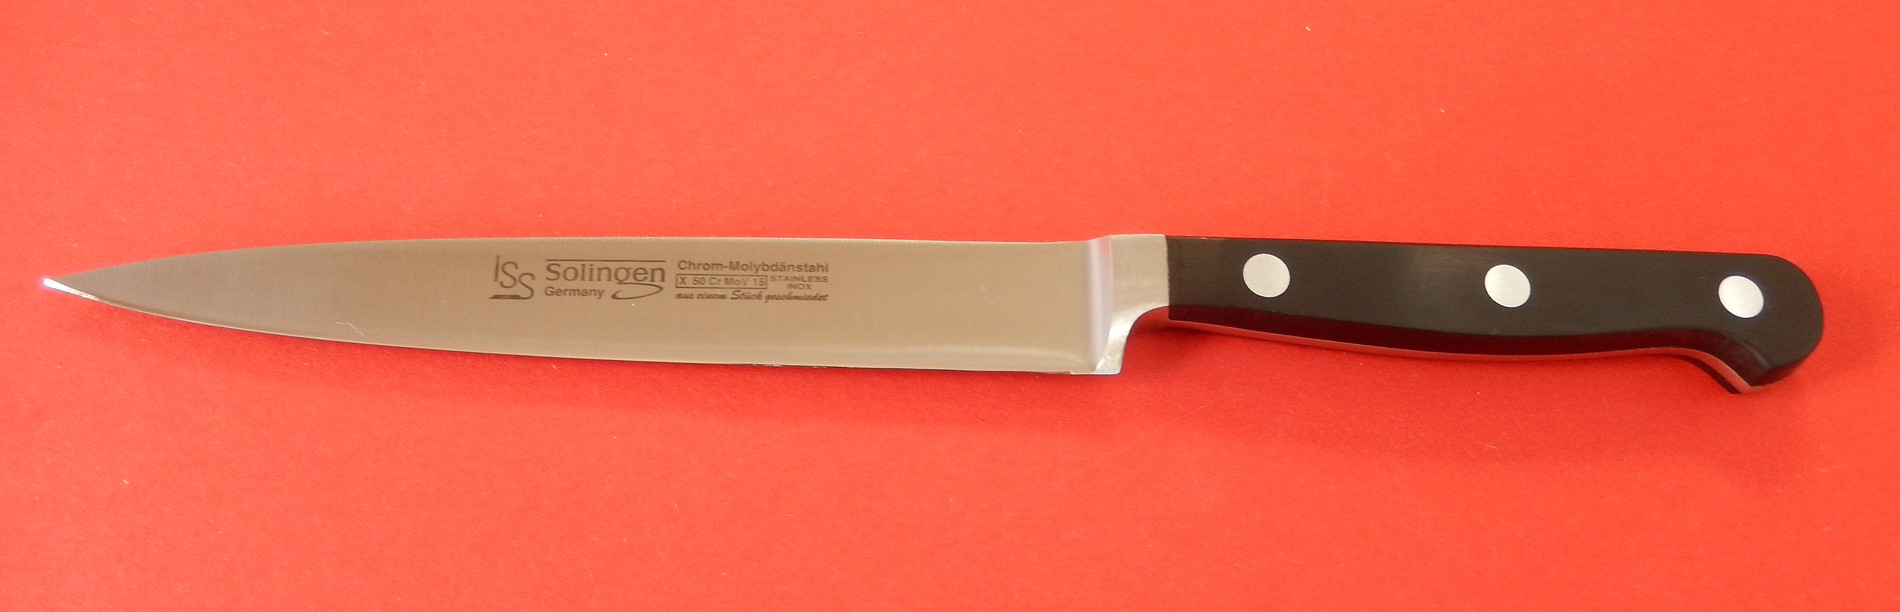 Filier Messer Filitiermesser 15 cm geschmiedet Messer made in Solingen bei ISS bestellen